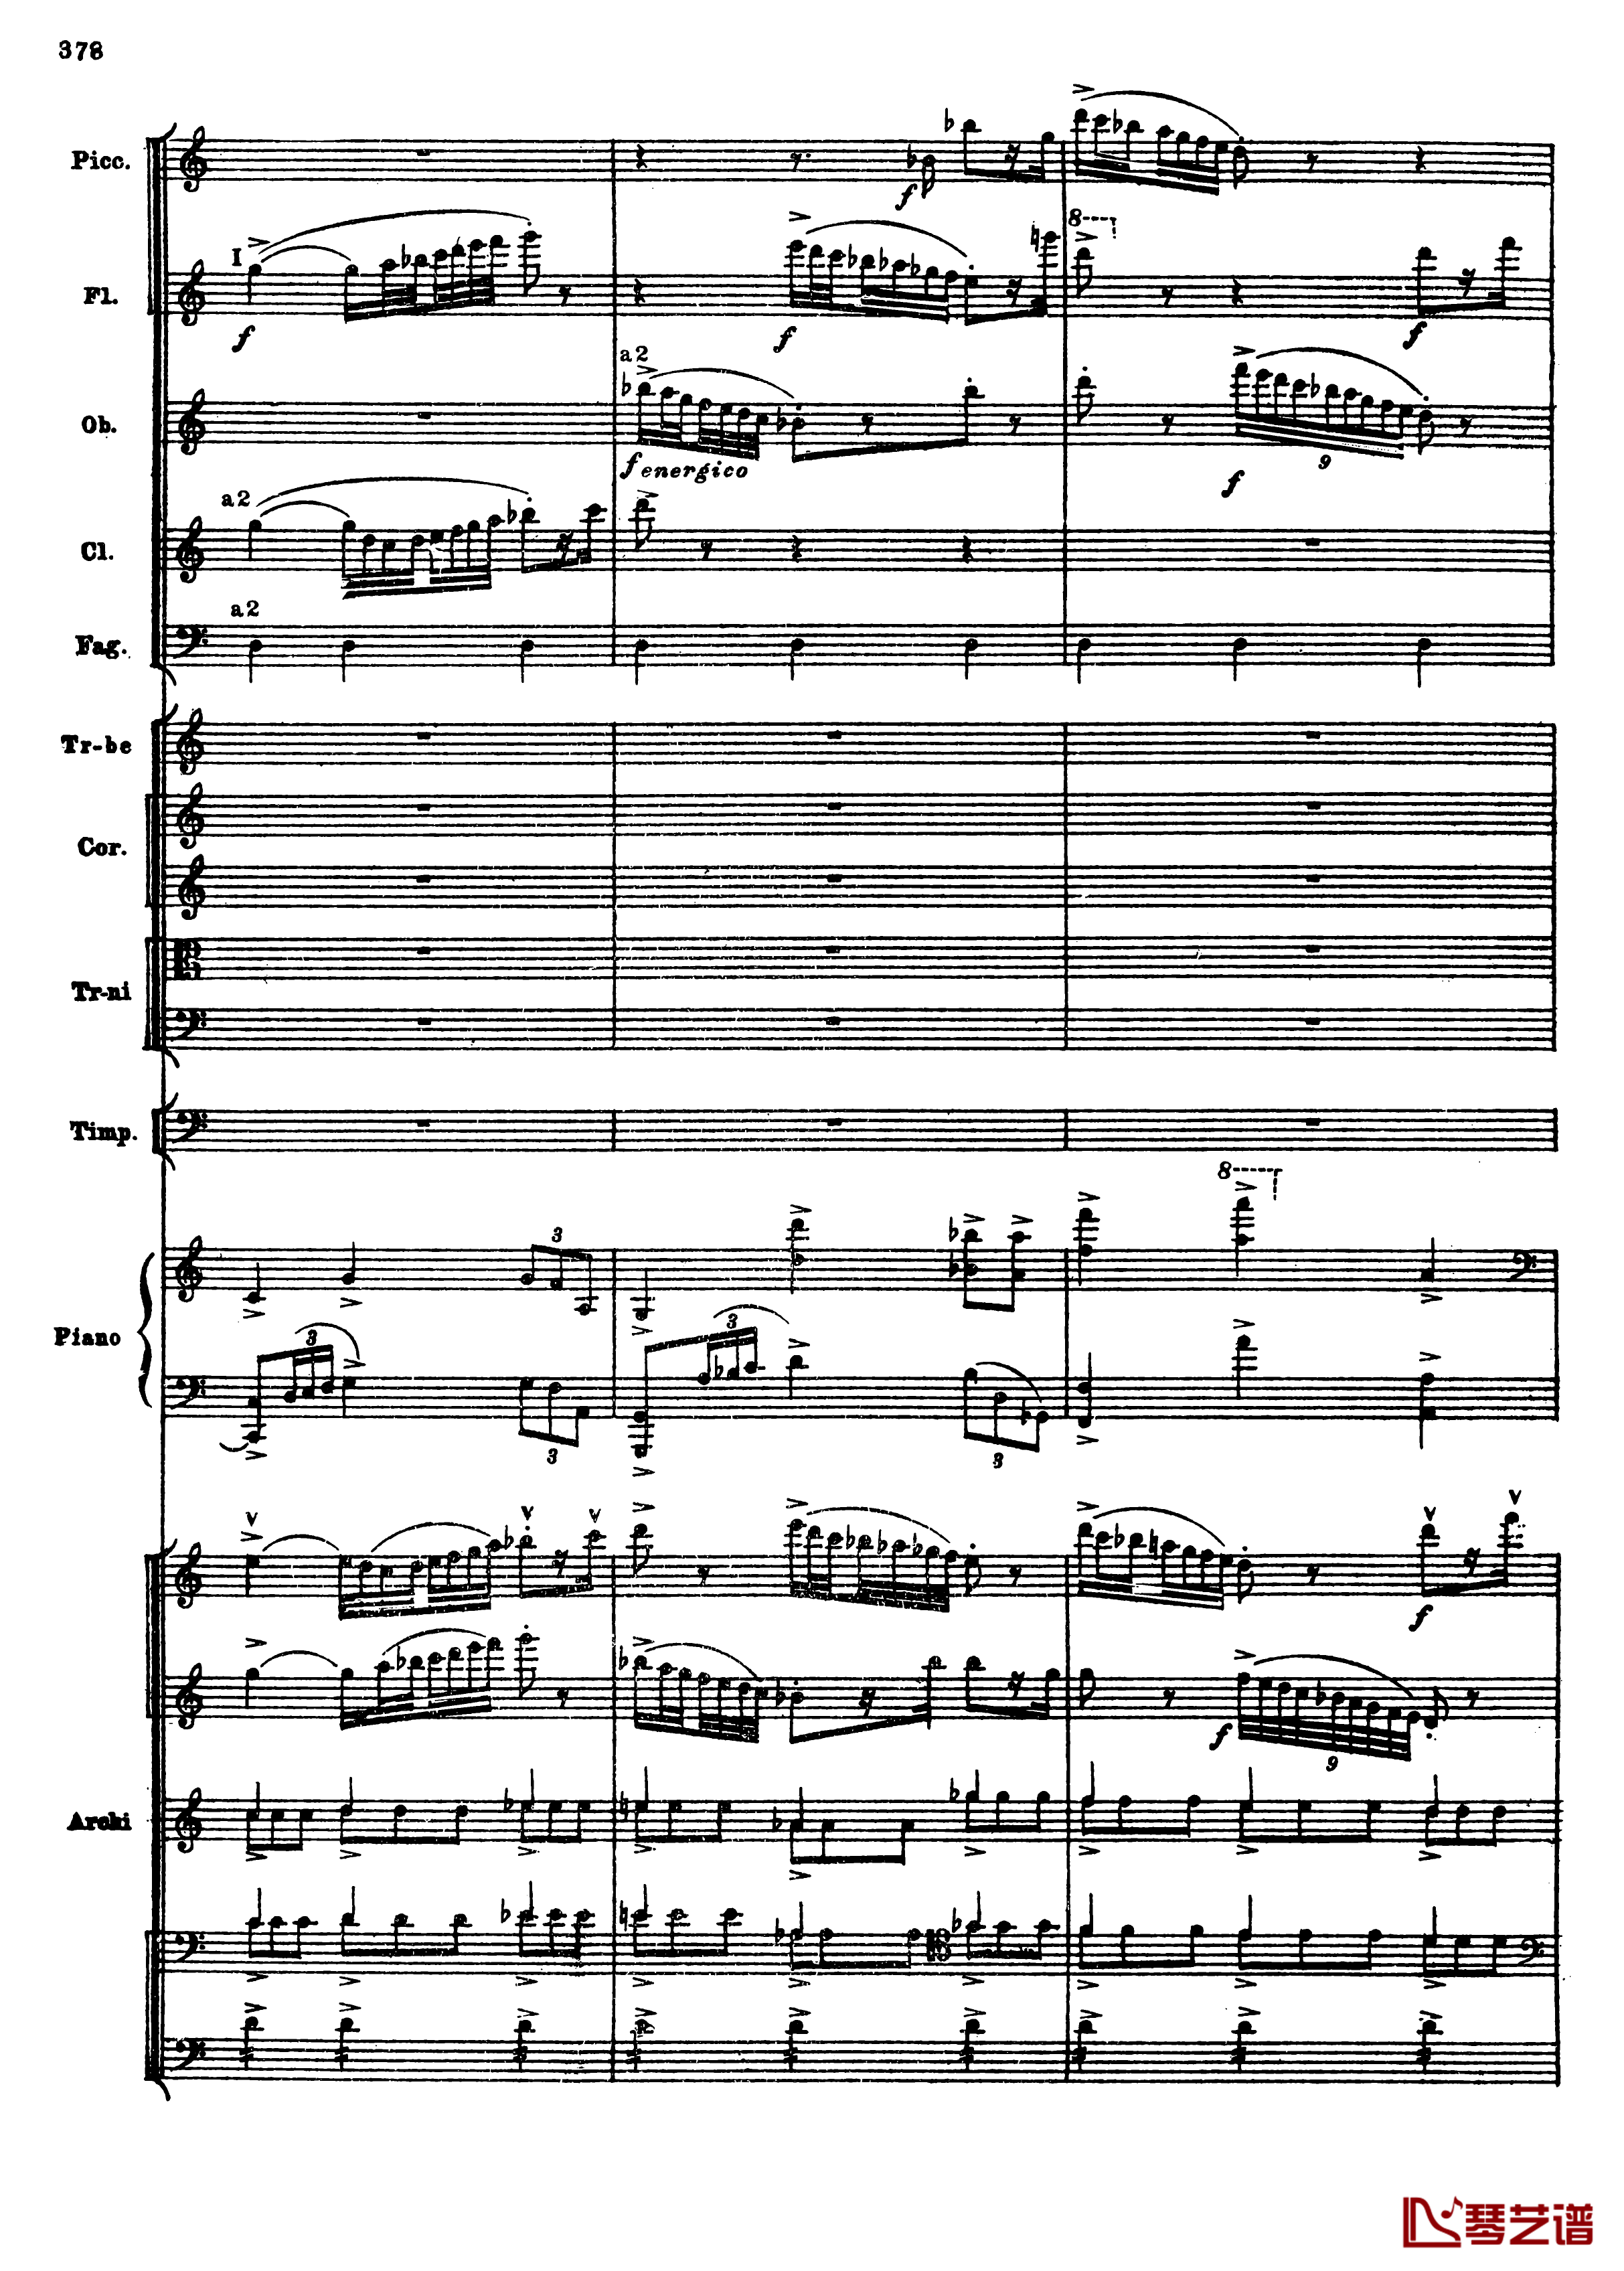 普罗科菲耶夫第三钢琴协奏曲钢琴谱-总谱-普罗科非耶夫110